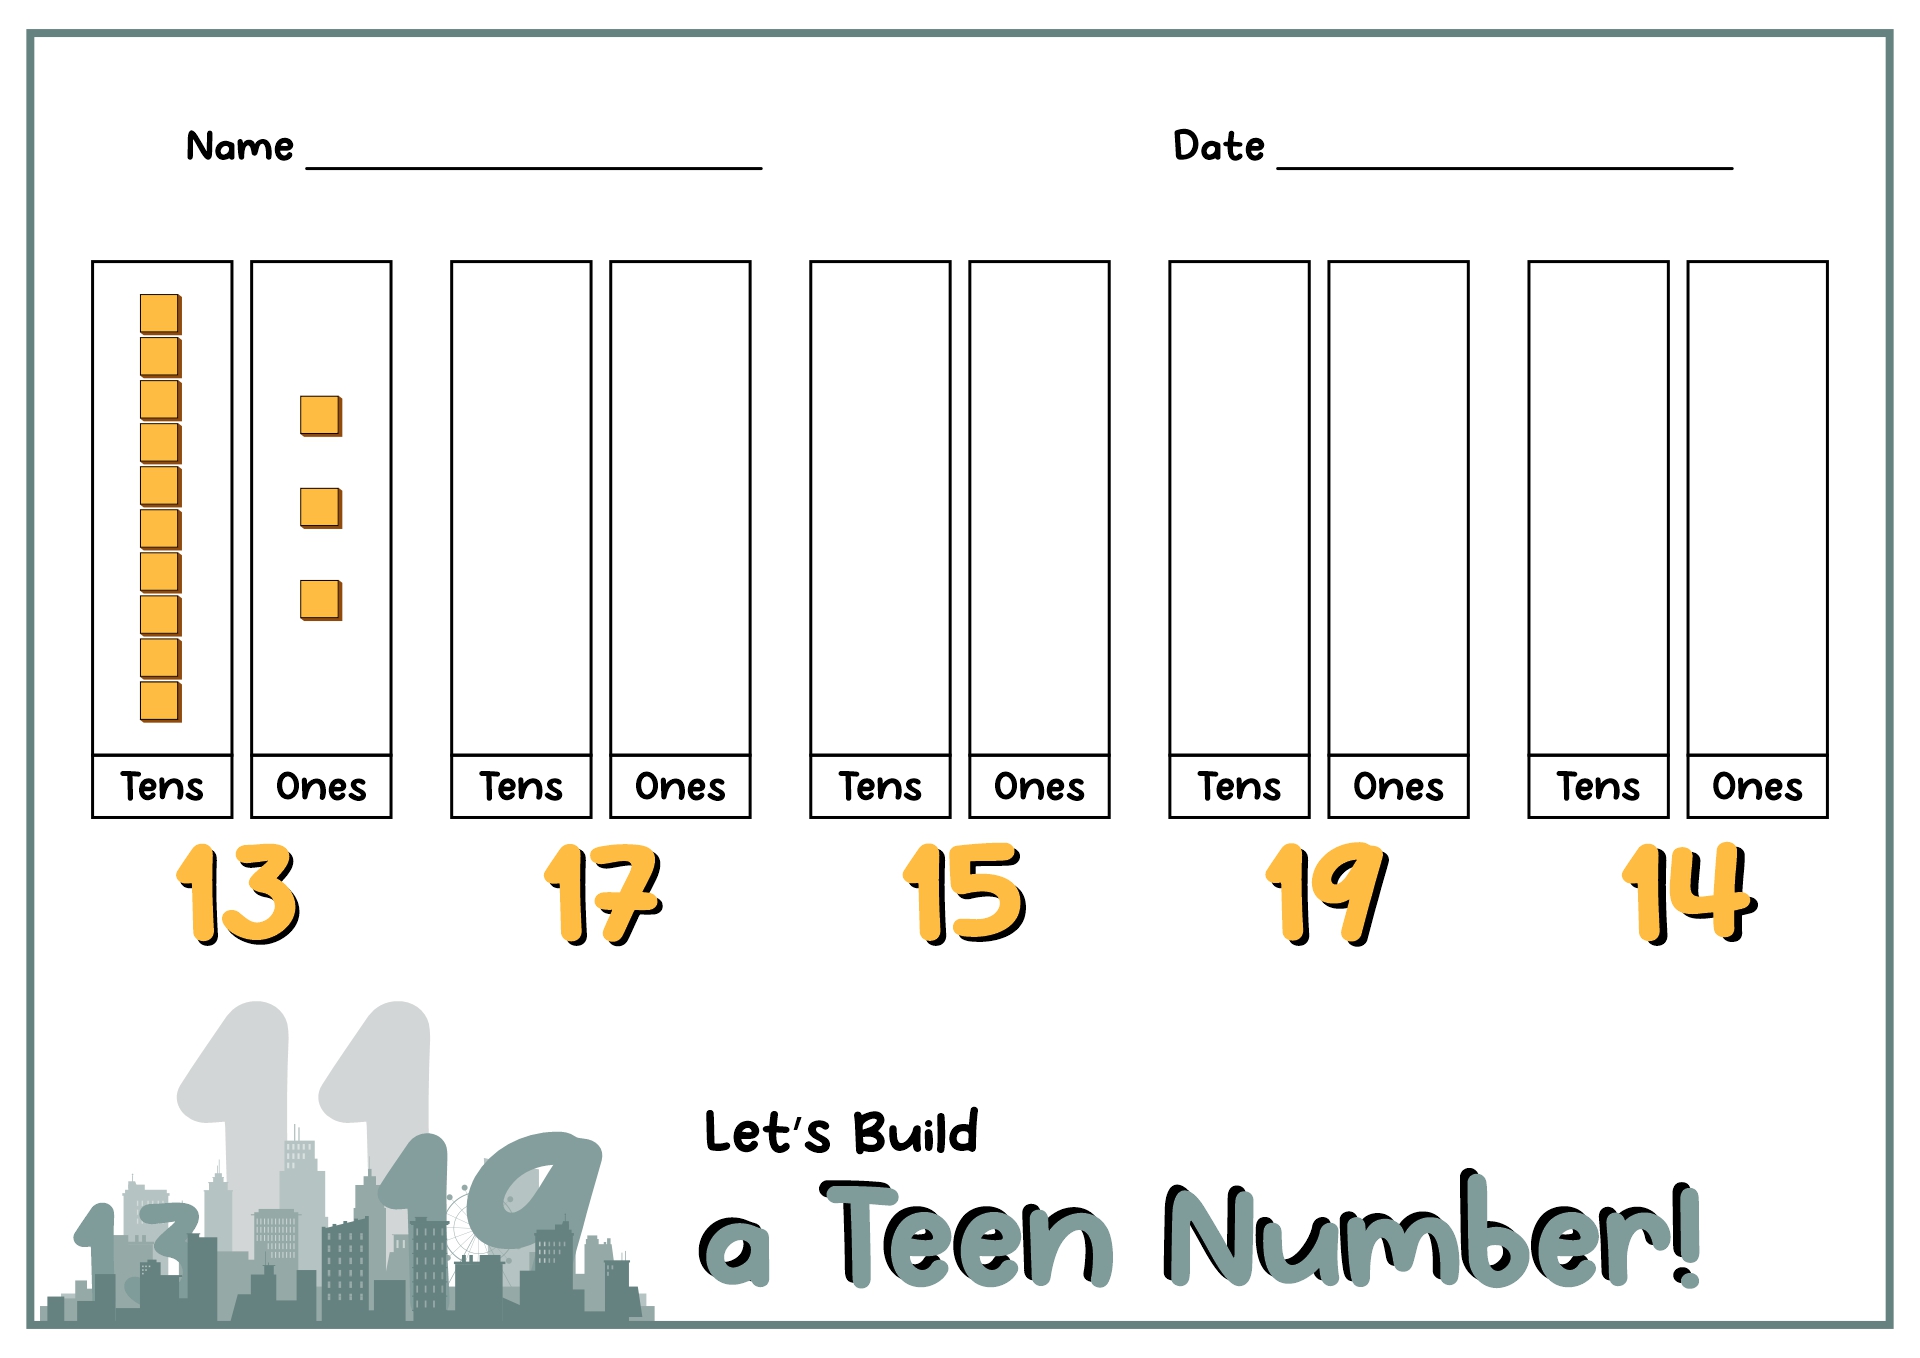 Teen Building Numbers Image